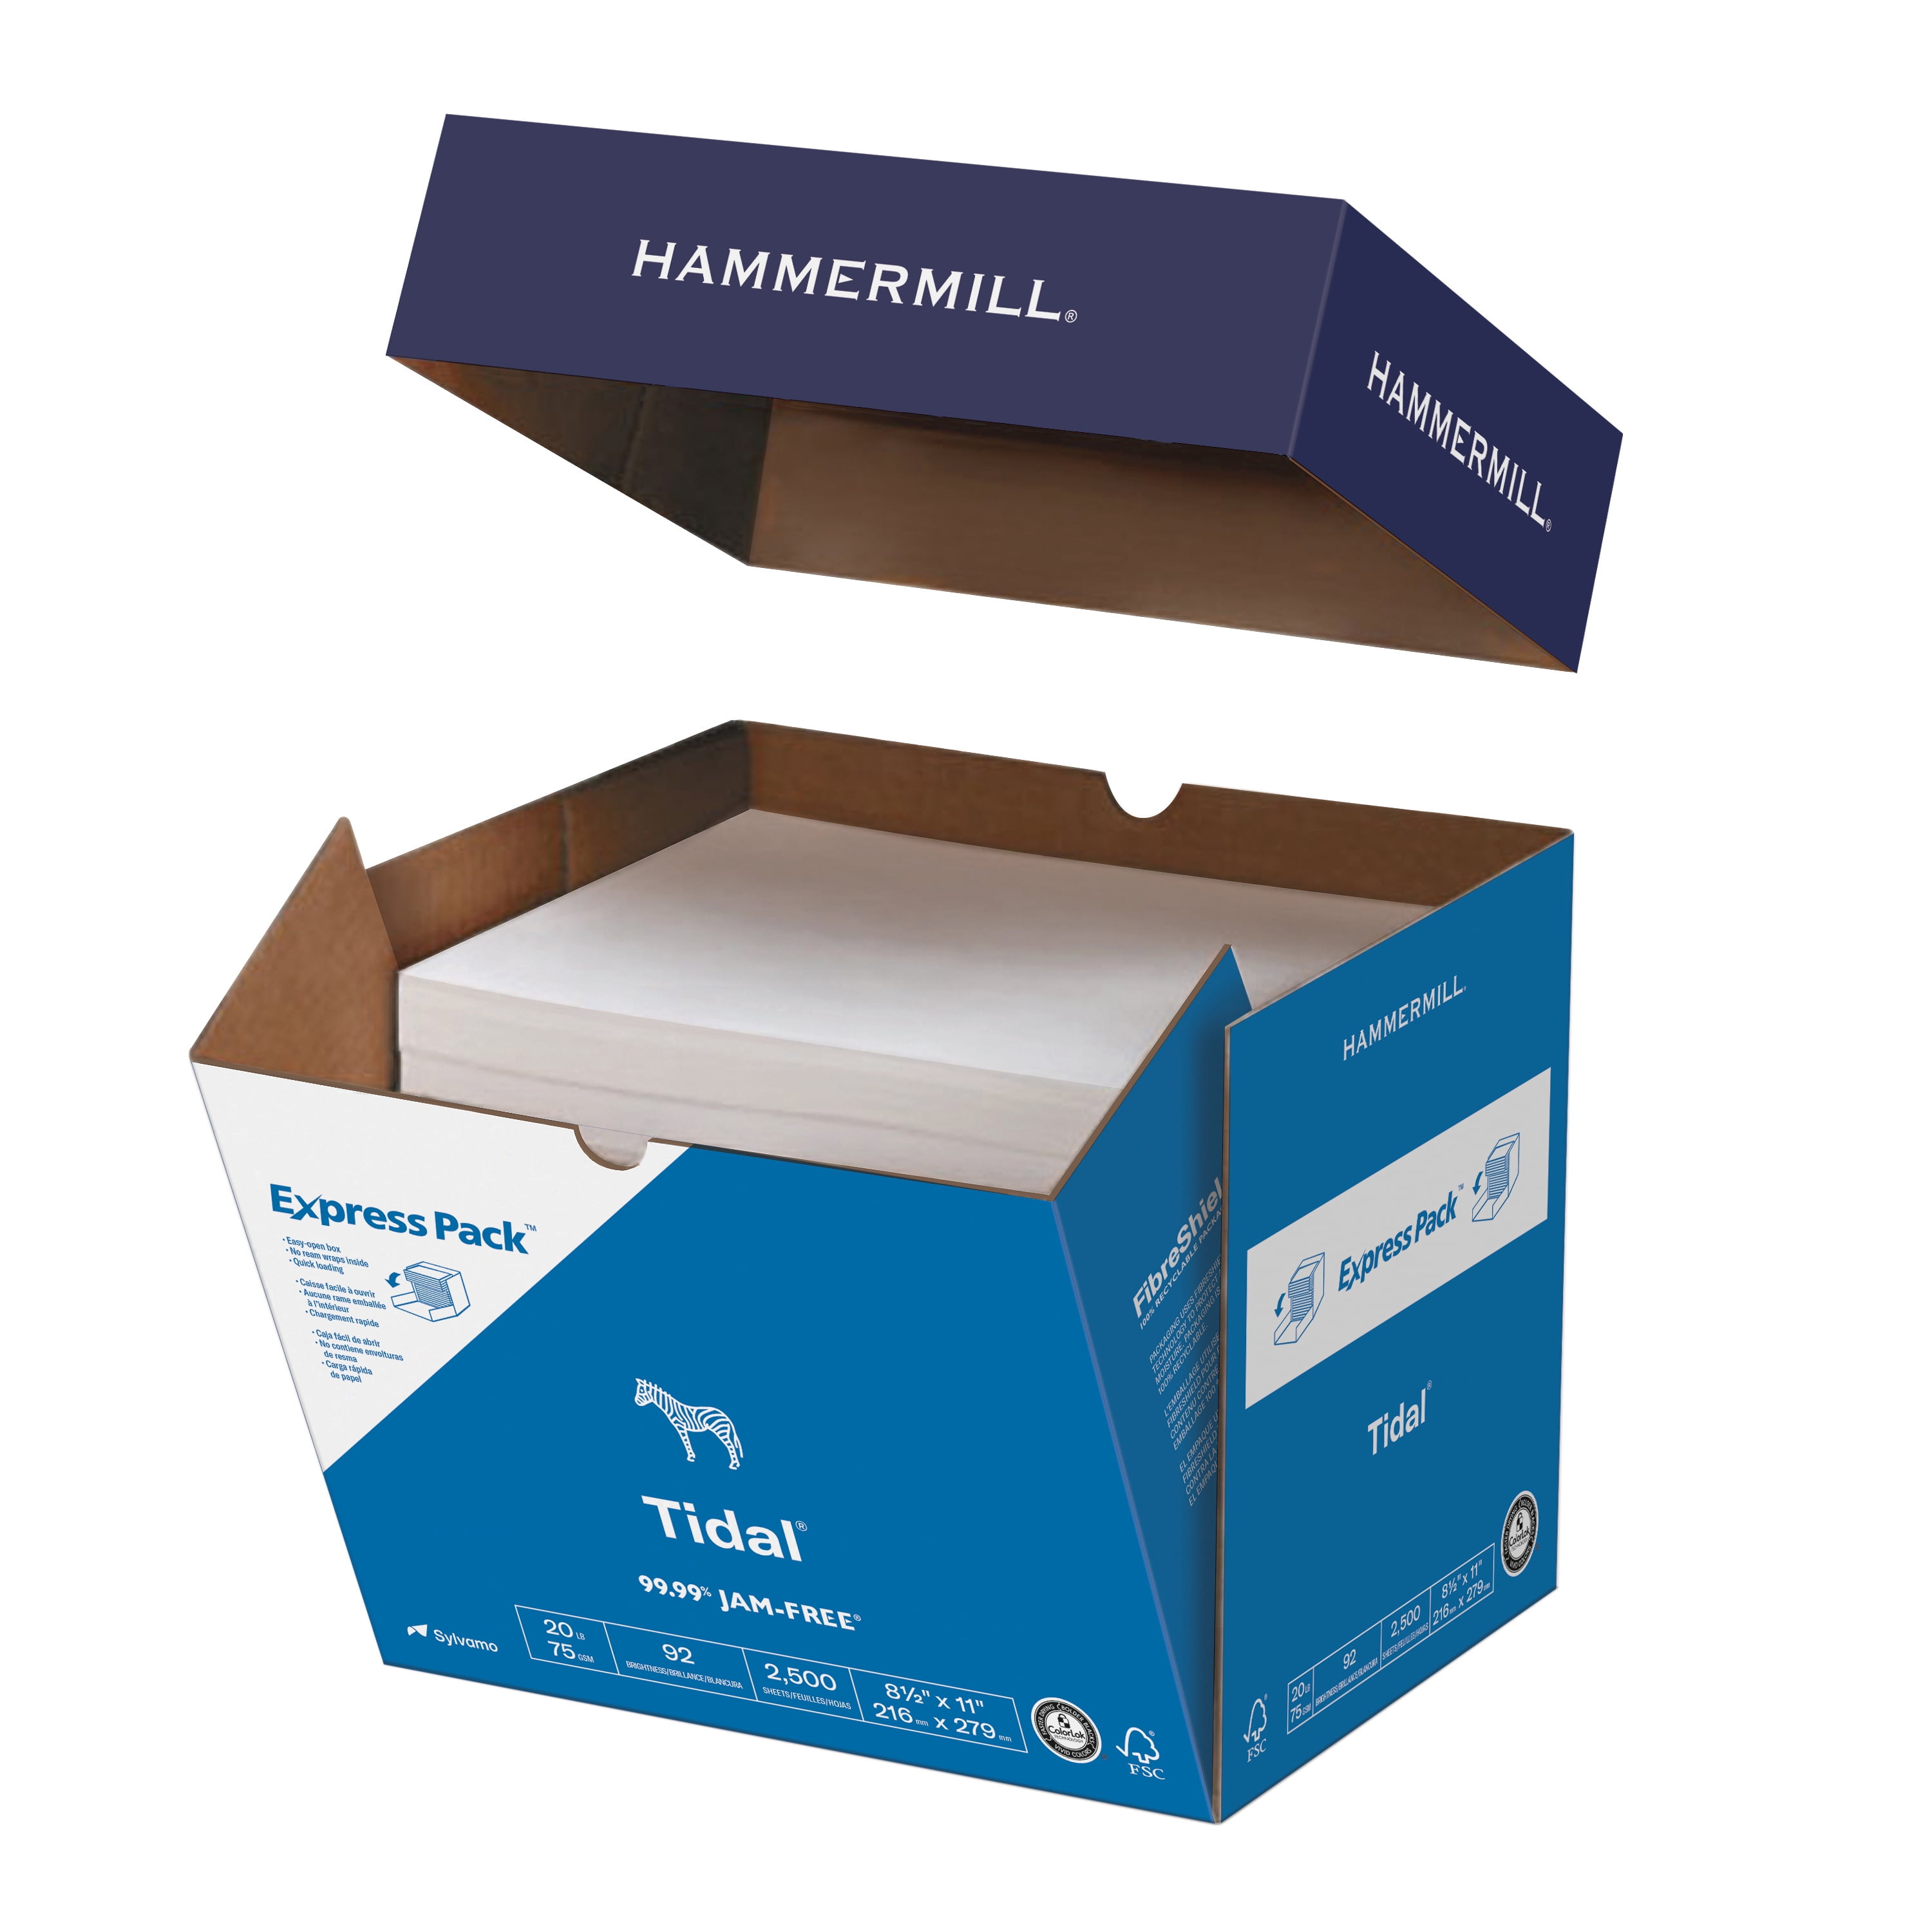 Hammermill Printer Tidal 20 lb., Copy Paper, 8.5" x 2,500 - Walmart.com